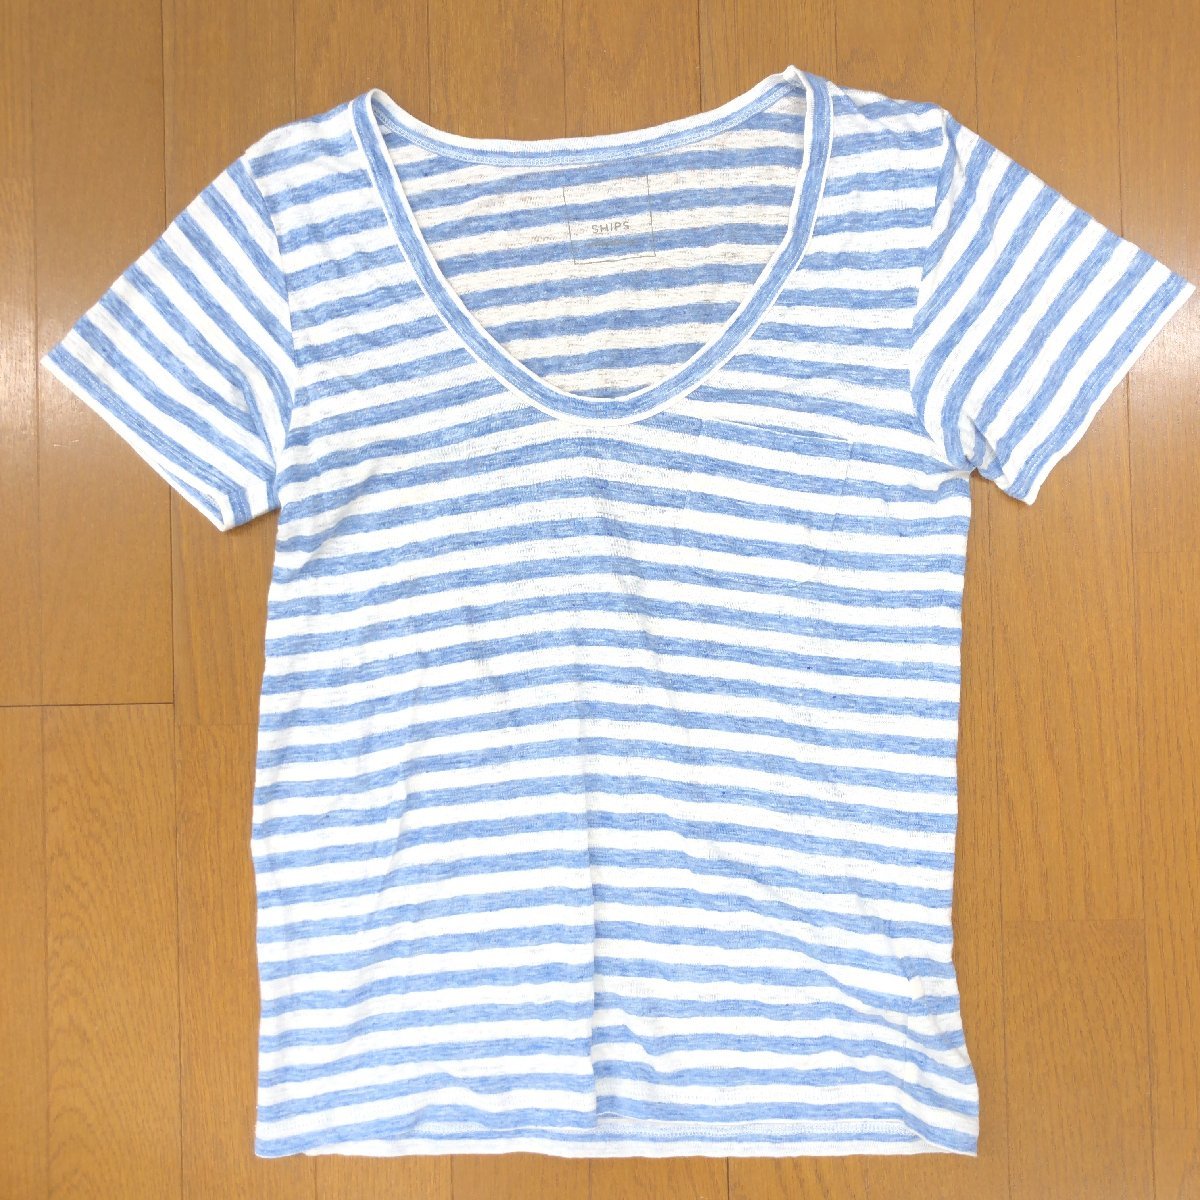 SHIPS シップス 麻 リネン100% ボーダー カットソー M相当 白×青 ホワイト ブルー 日本製 半袖 Tシャツ ポケT 国内正規品 レディースの画像1